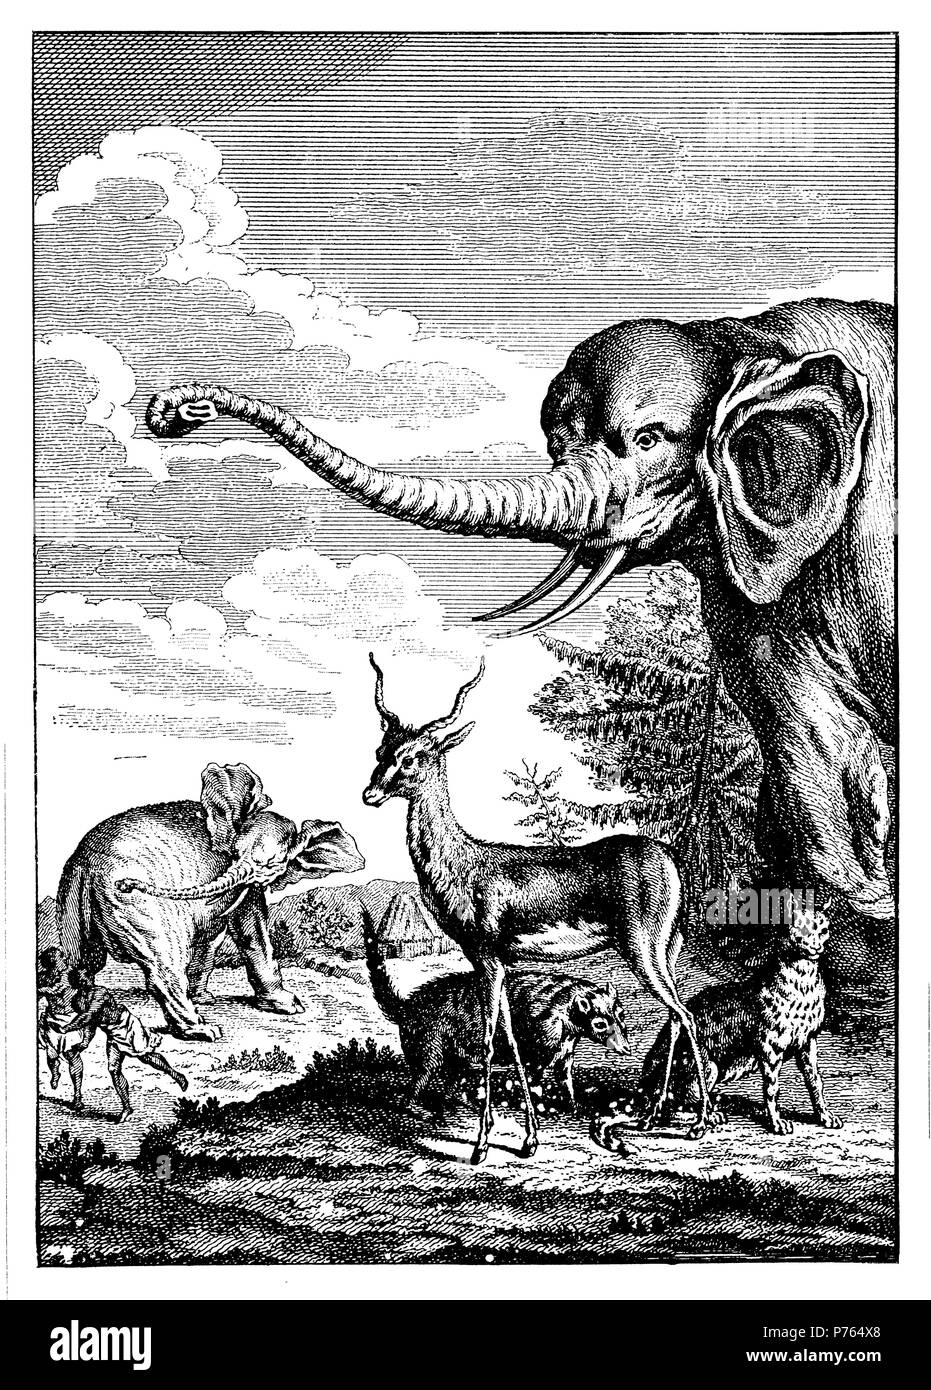 Elefanten, Gazellen, Tiger und Civet-katze als Beispiel für die Darstellung im 18. Jahrhundert Reiseberichte. Nach: "Geschichte der Voyages', 1902 Stockfoto